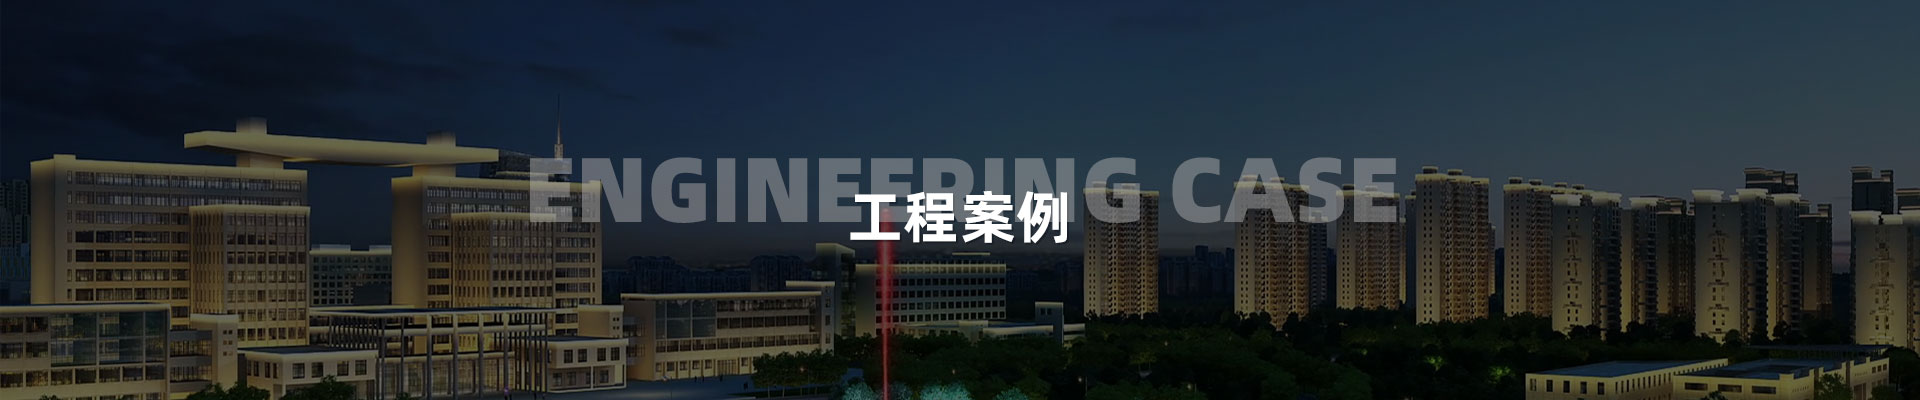 文旅夜游-深圳市中筑景觀亮化照明科技有限公司